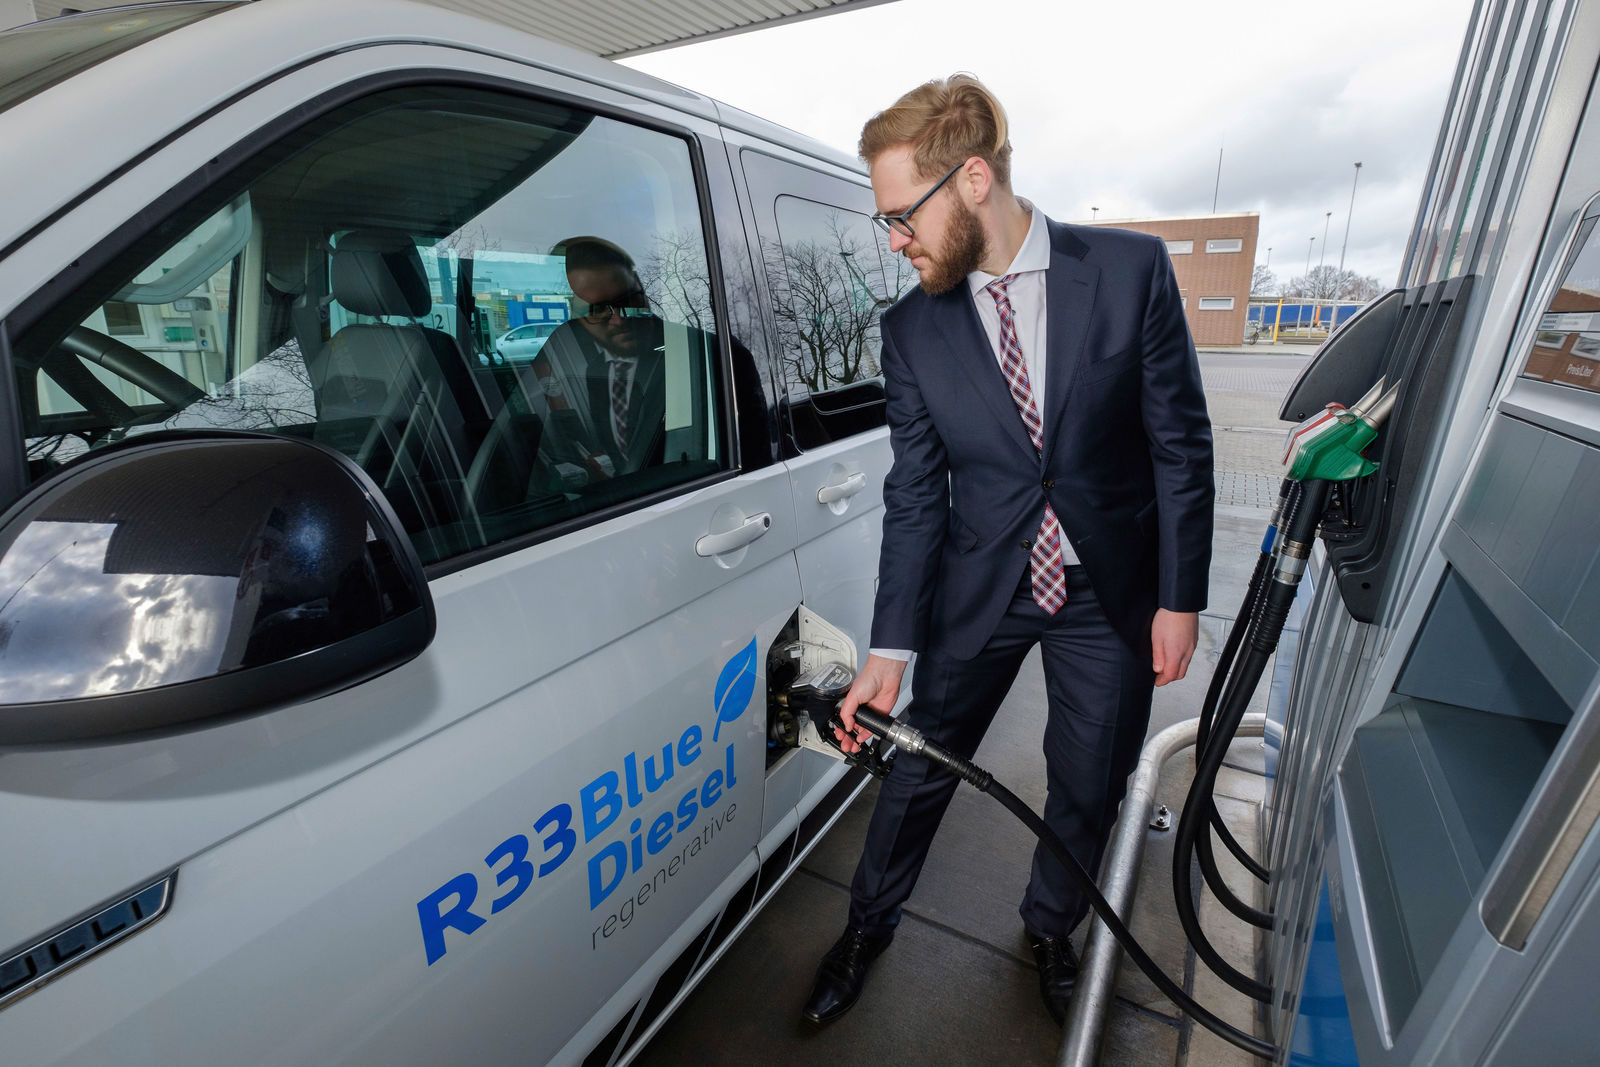 Neuer regenerativer Kraftstoff R33 BlueDiesel hilft CO2-Emissionen von Flotten zu senken